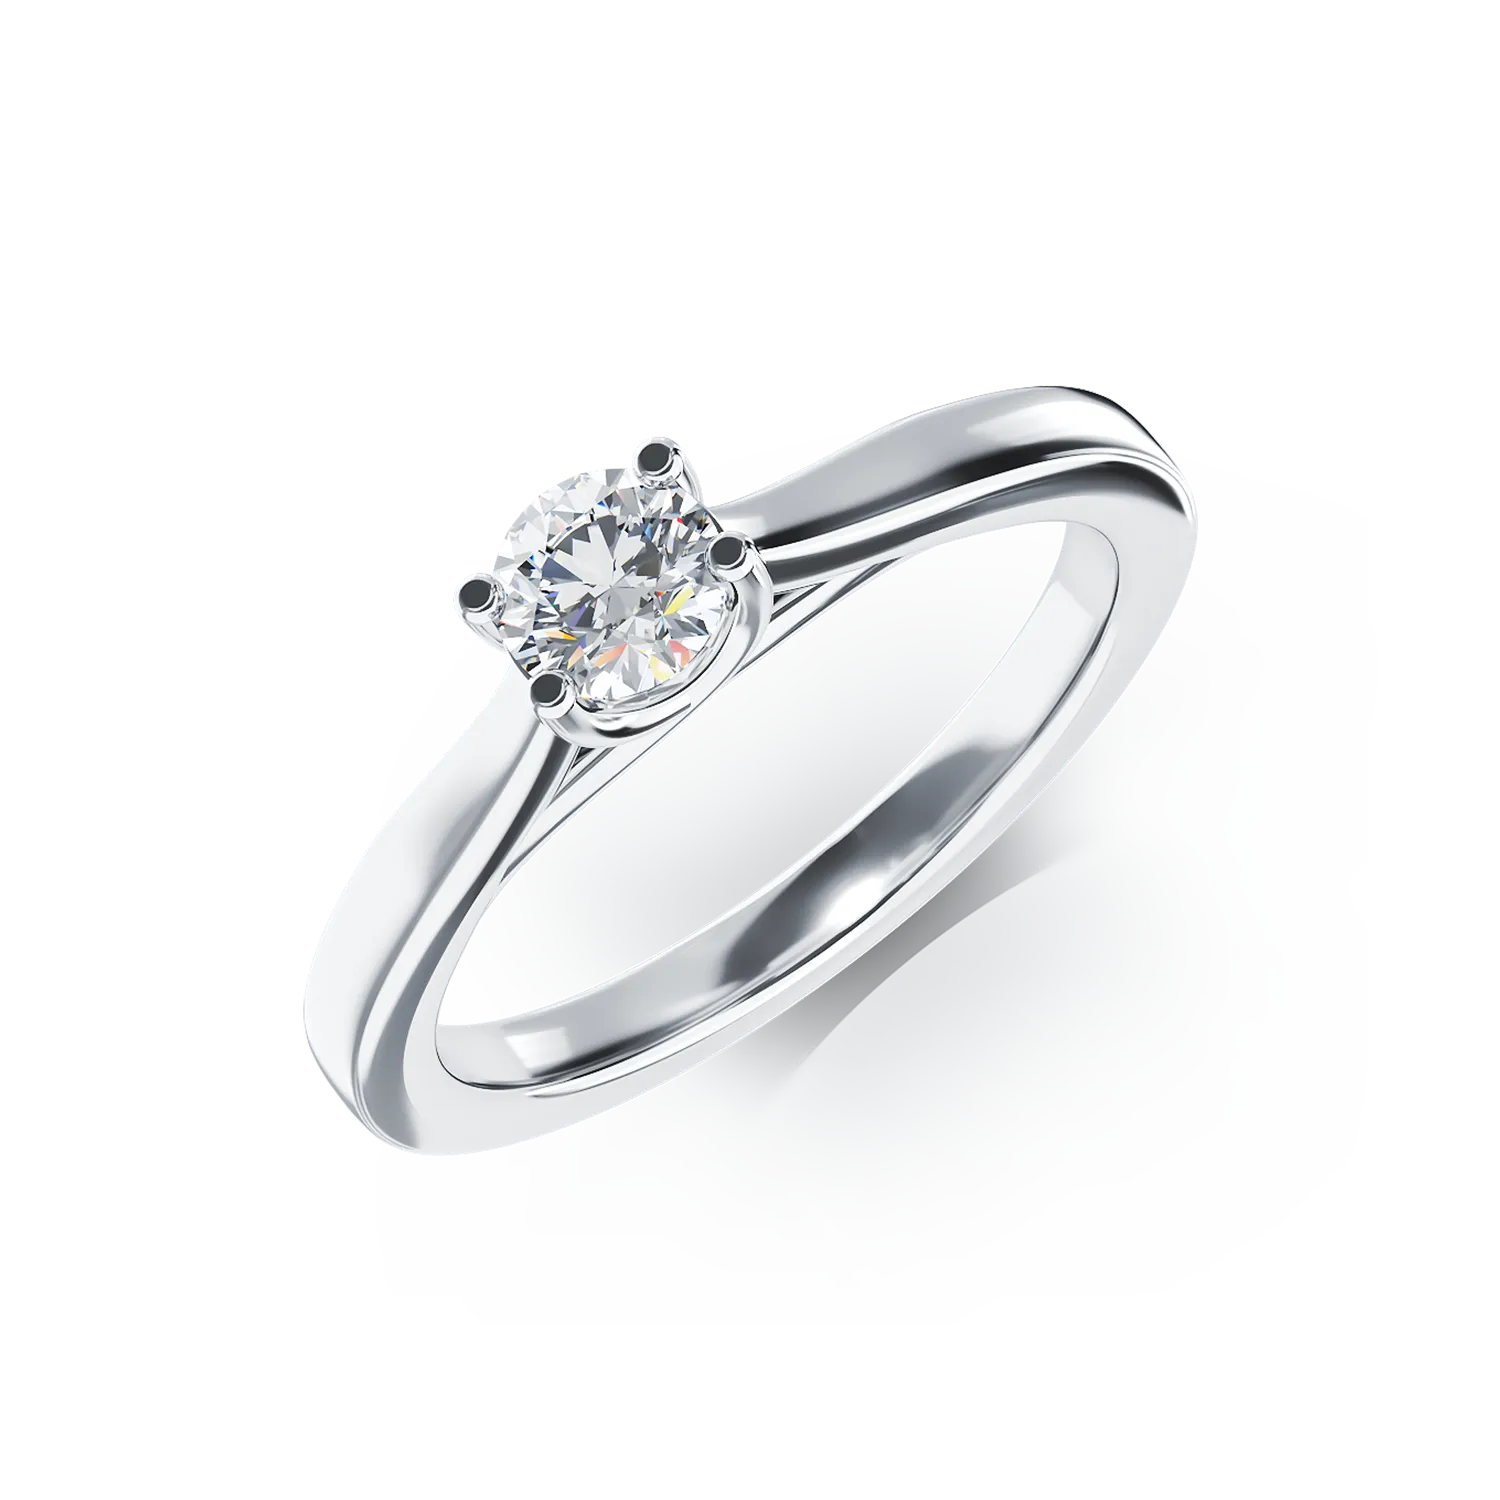 Eljegyzési gyűrű 18K-os fehér aranyból 0,35ct gyémánttal. Gramm: 3,88